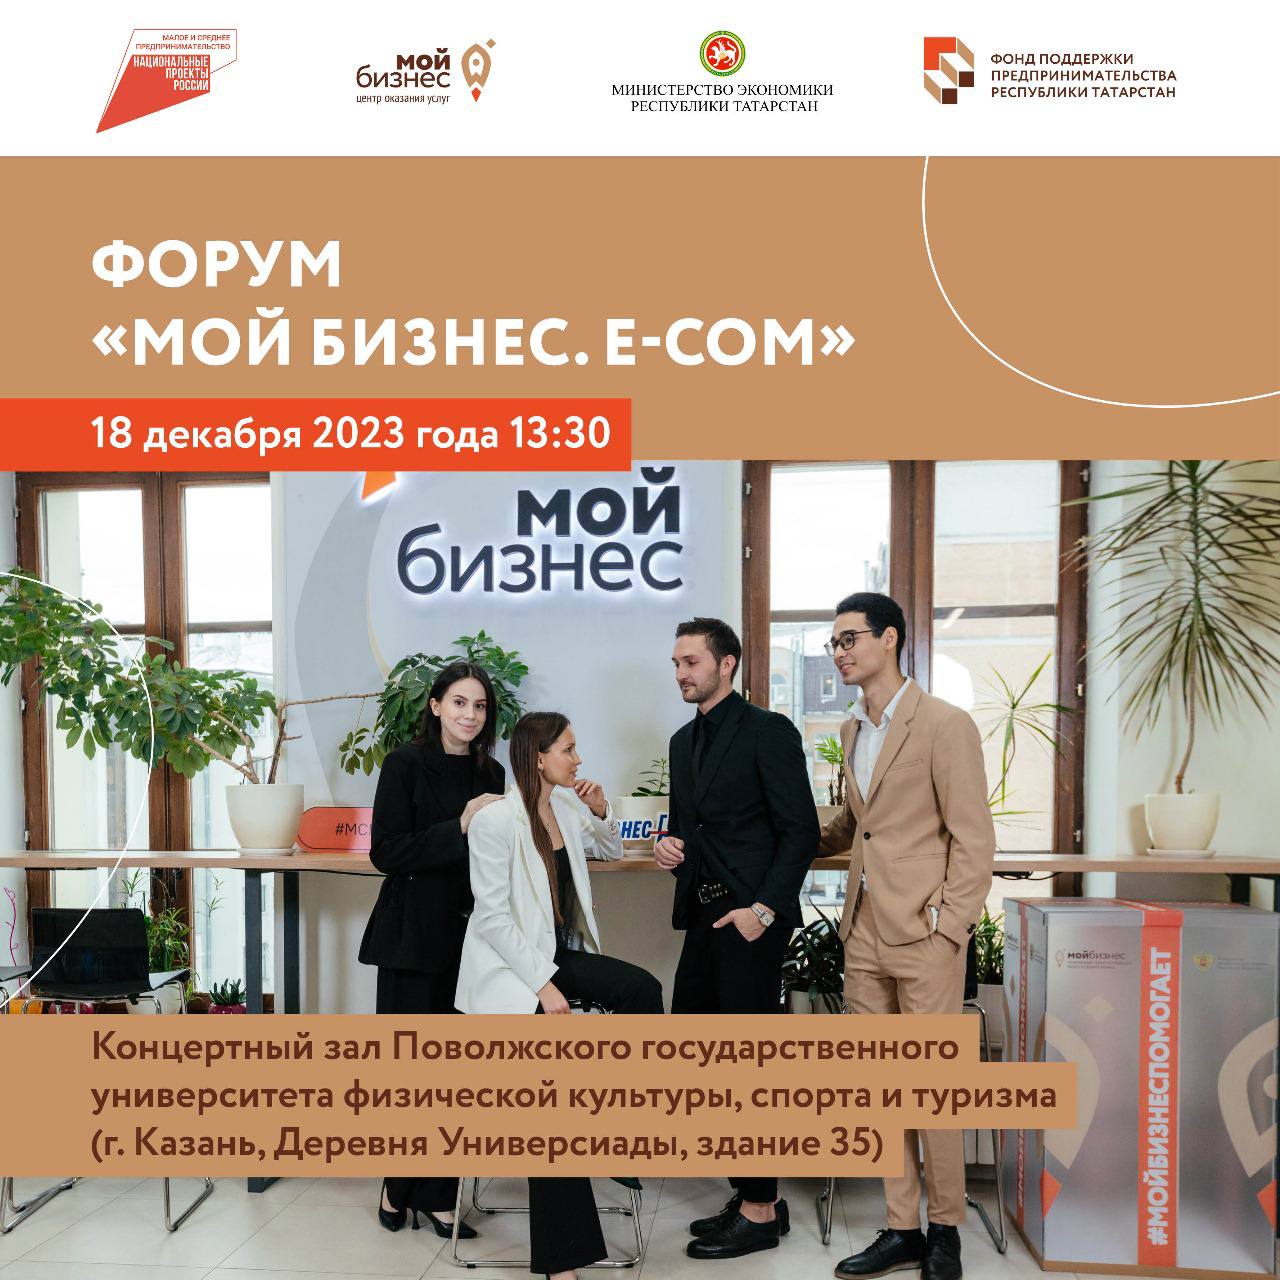 18 декабря в Республике Татарстан состоится уникальный форум «Мой бизнес. E-COM».